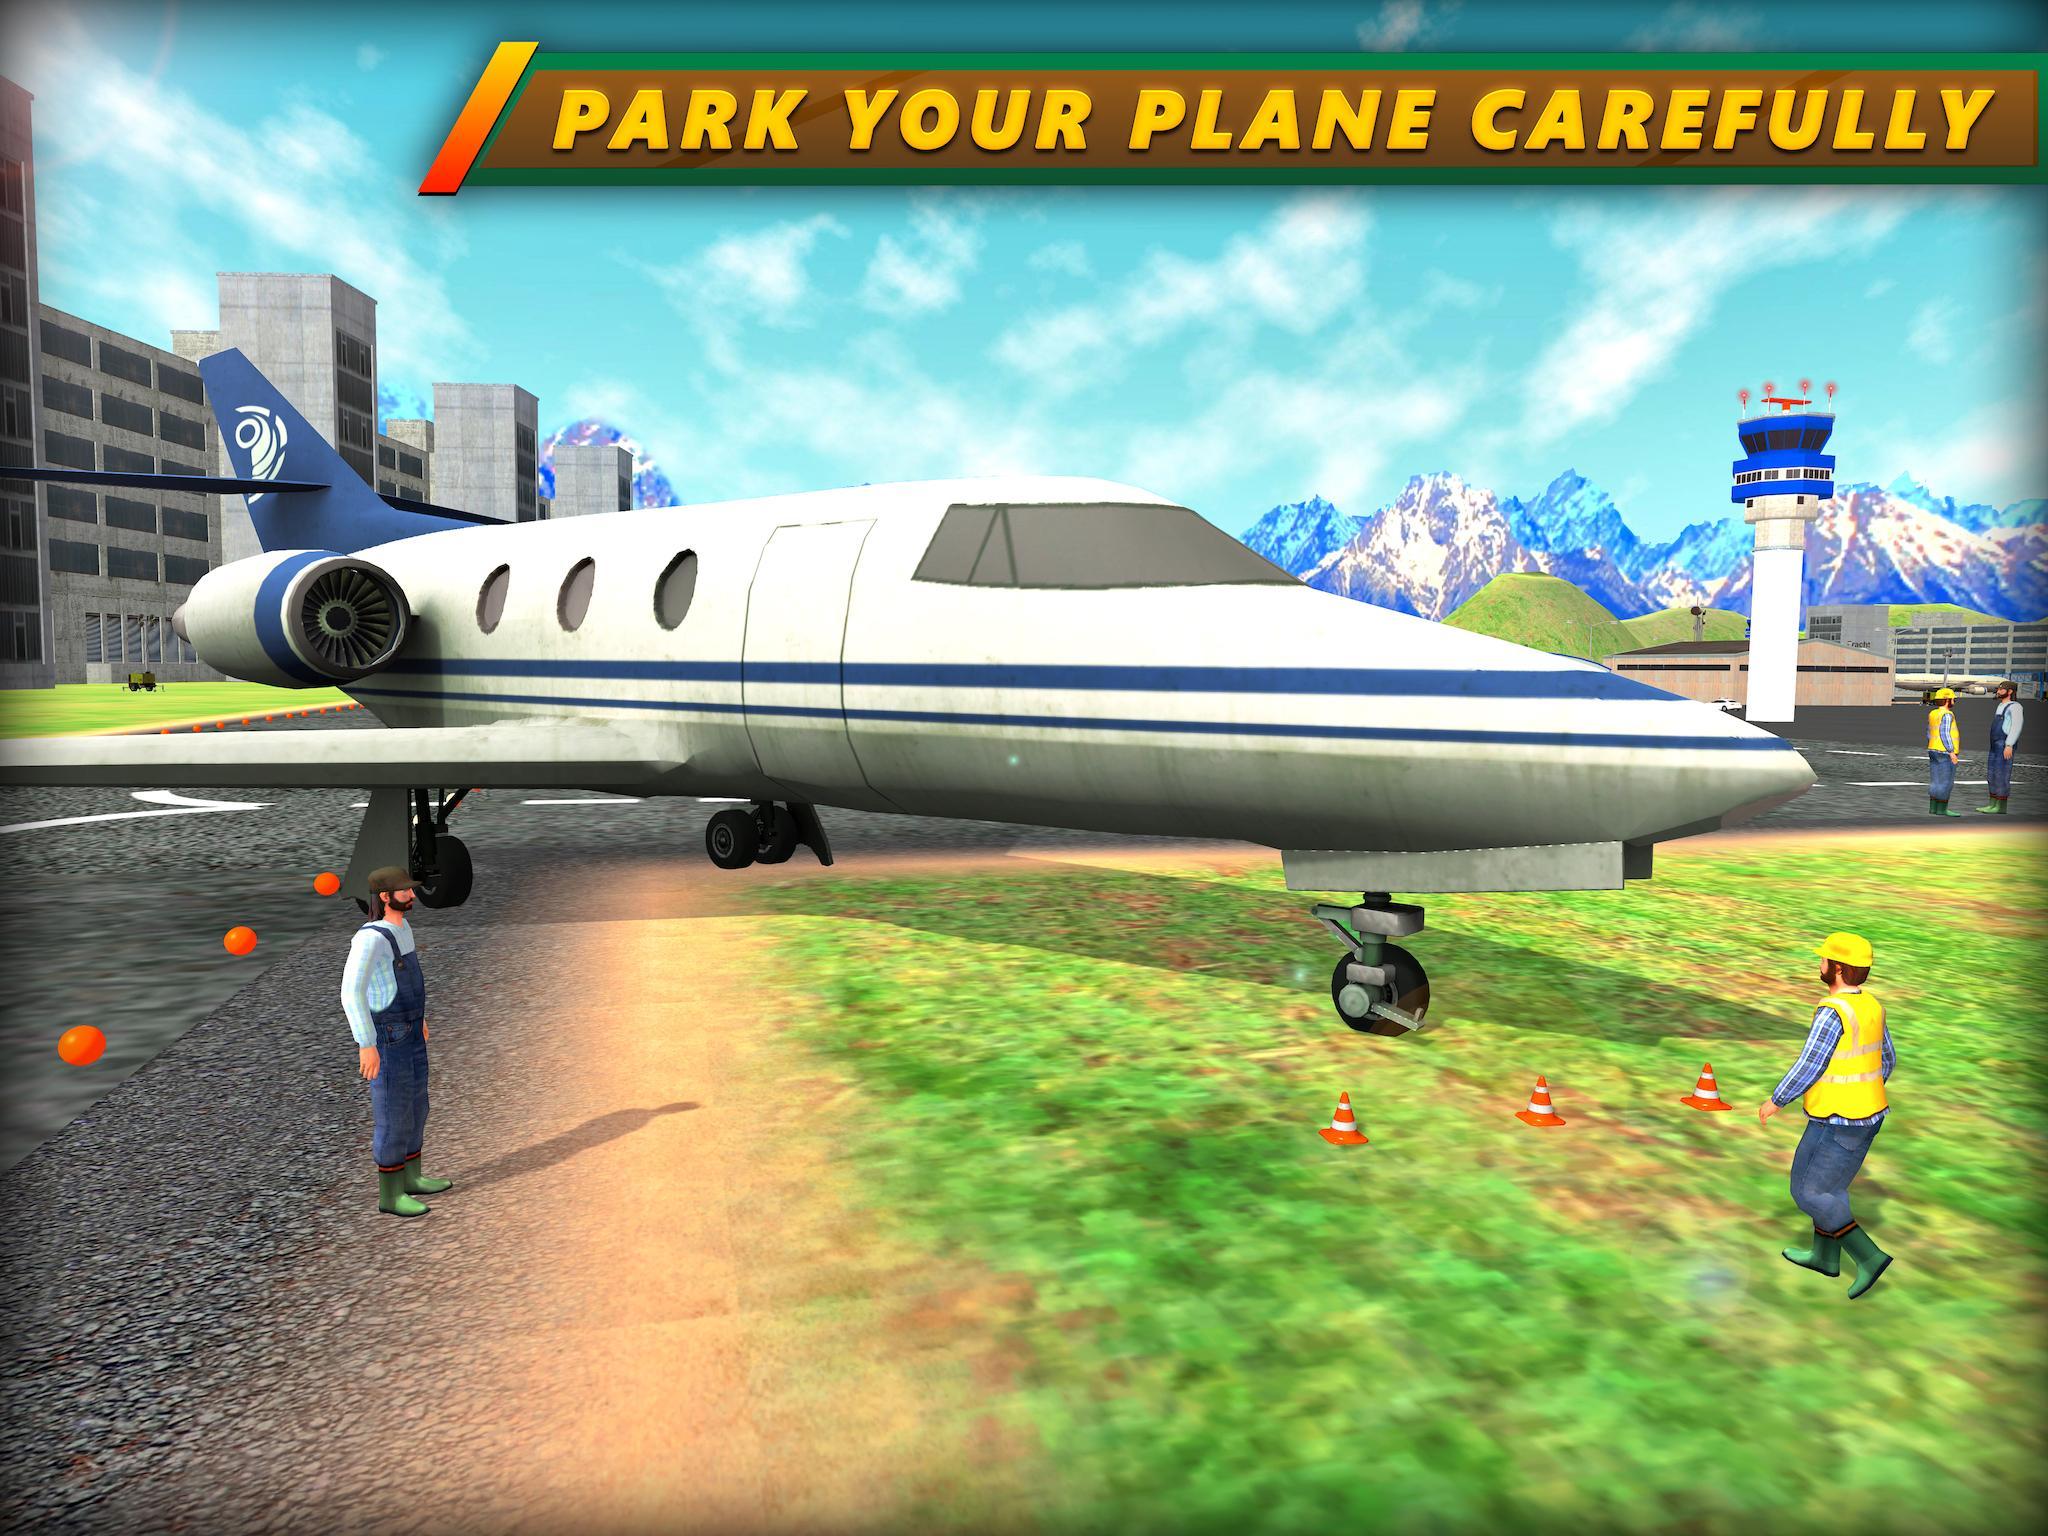 Том на самолете игра. Игра сажать самолеты. Игра симулятор самолет посадка. Симулятор аварийной посадки самолета. Игра приземление на самолете игра.